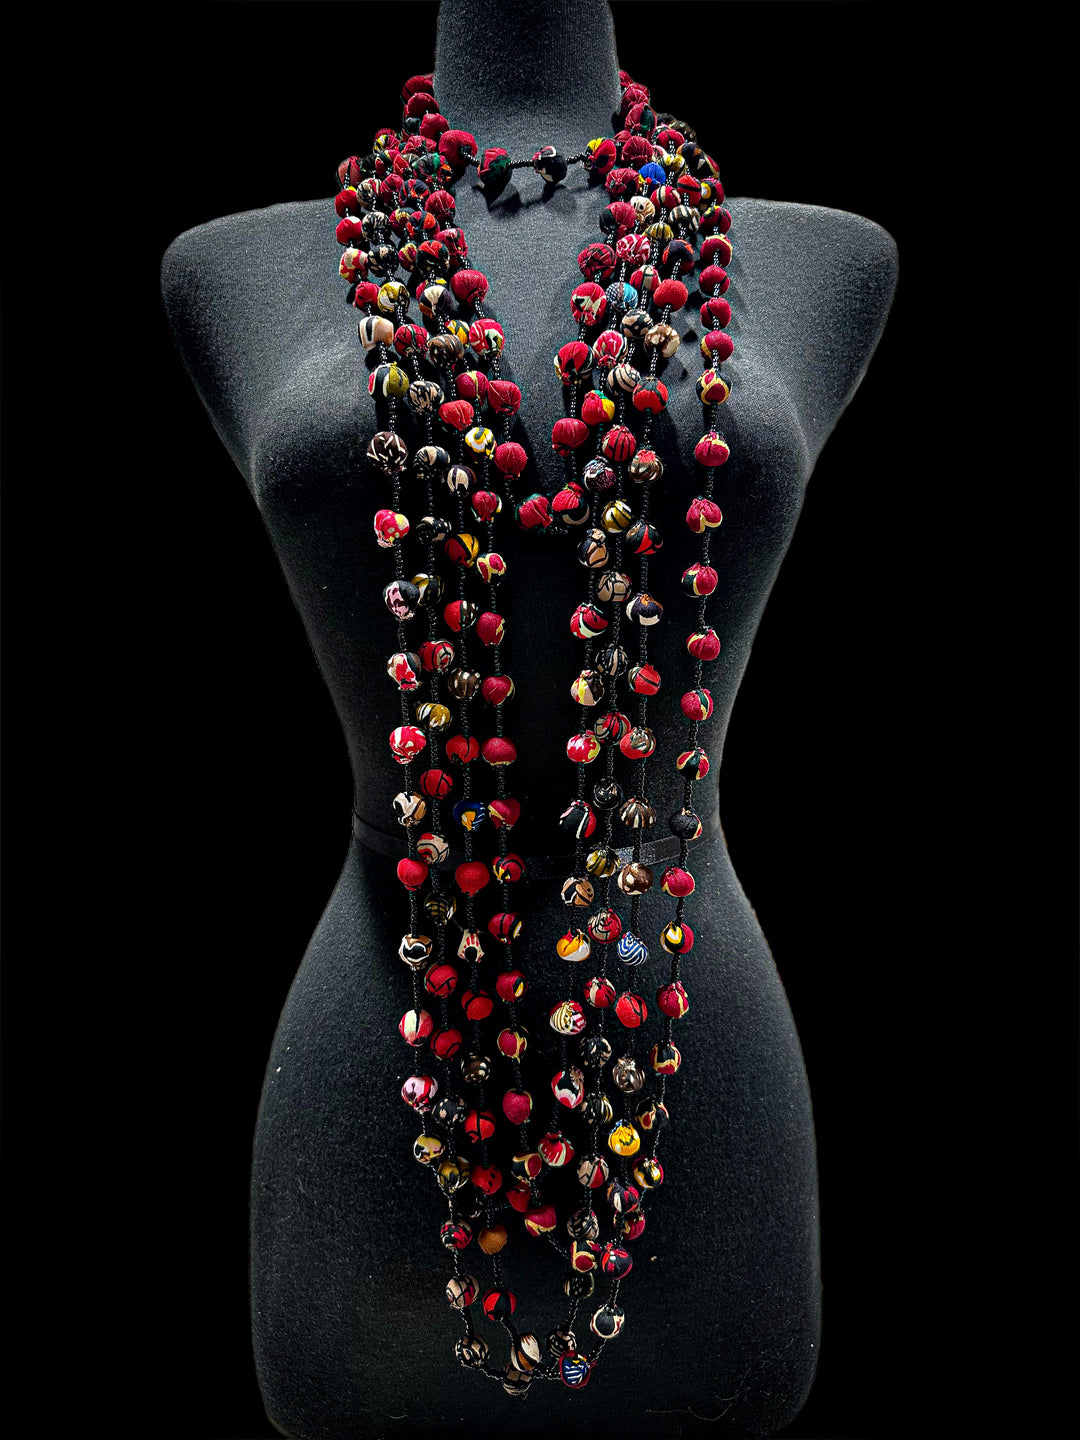 Ankara Balls Necklace - Trufacebygrace